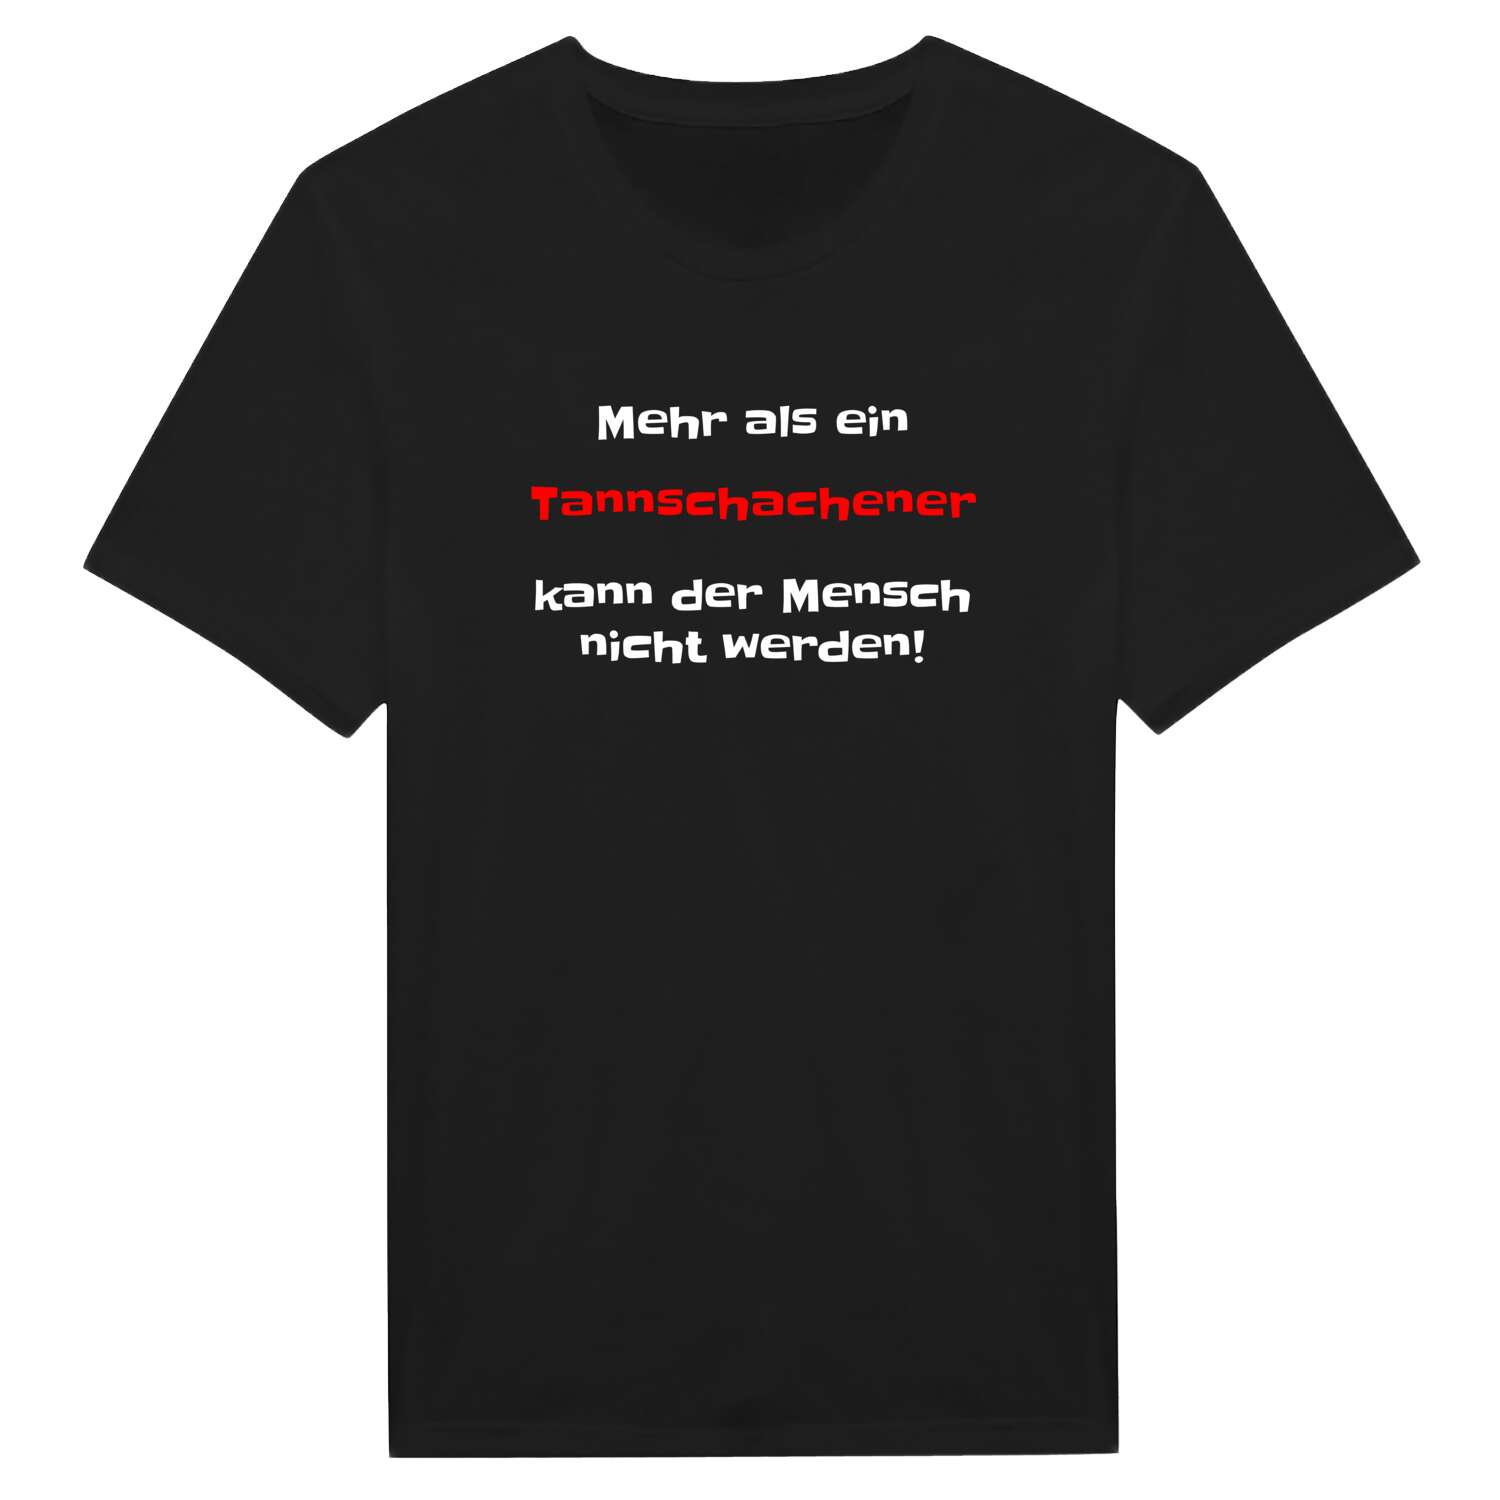 Tannschachen T-Shirt »Mehr als ein«